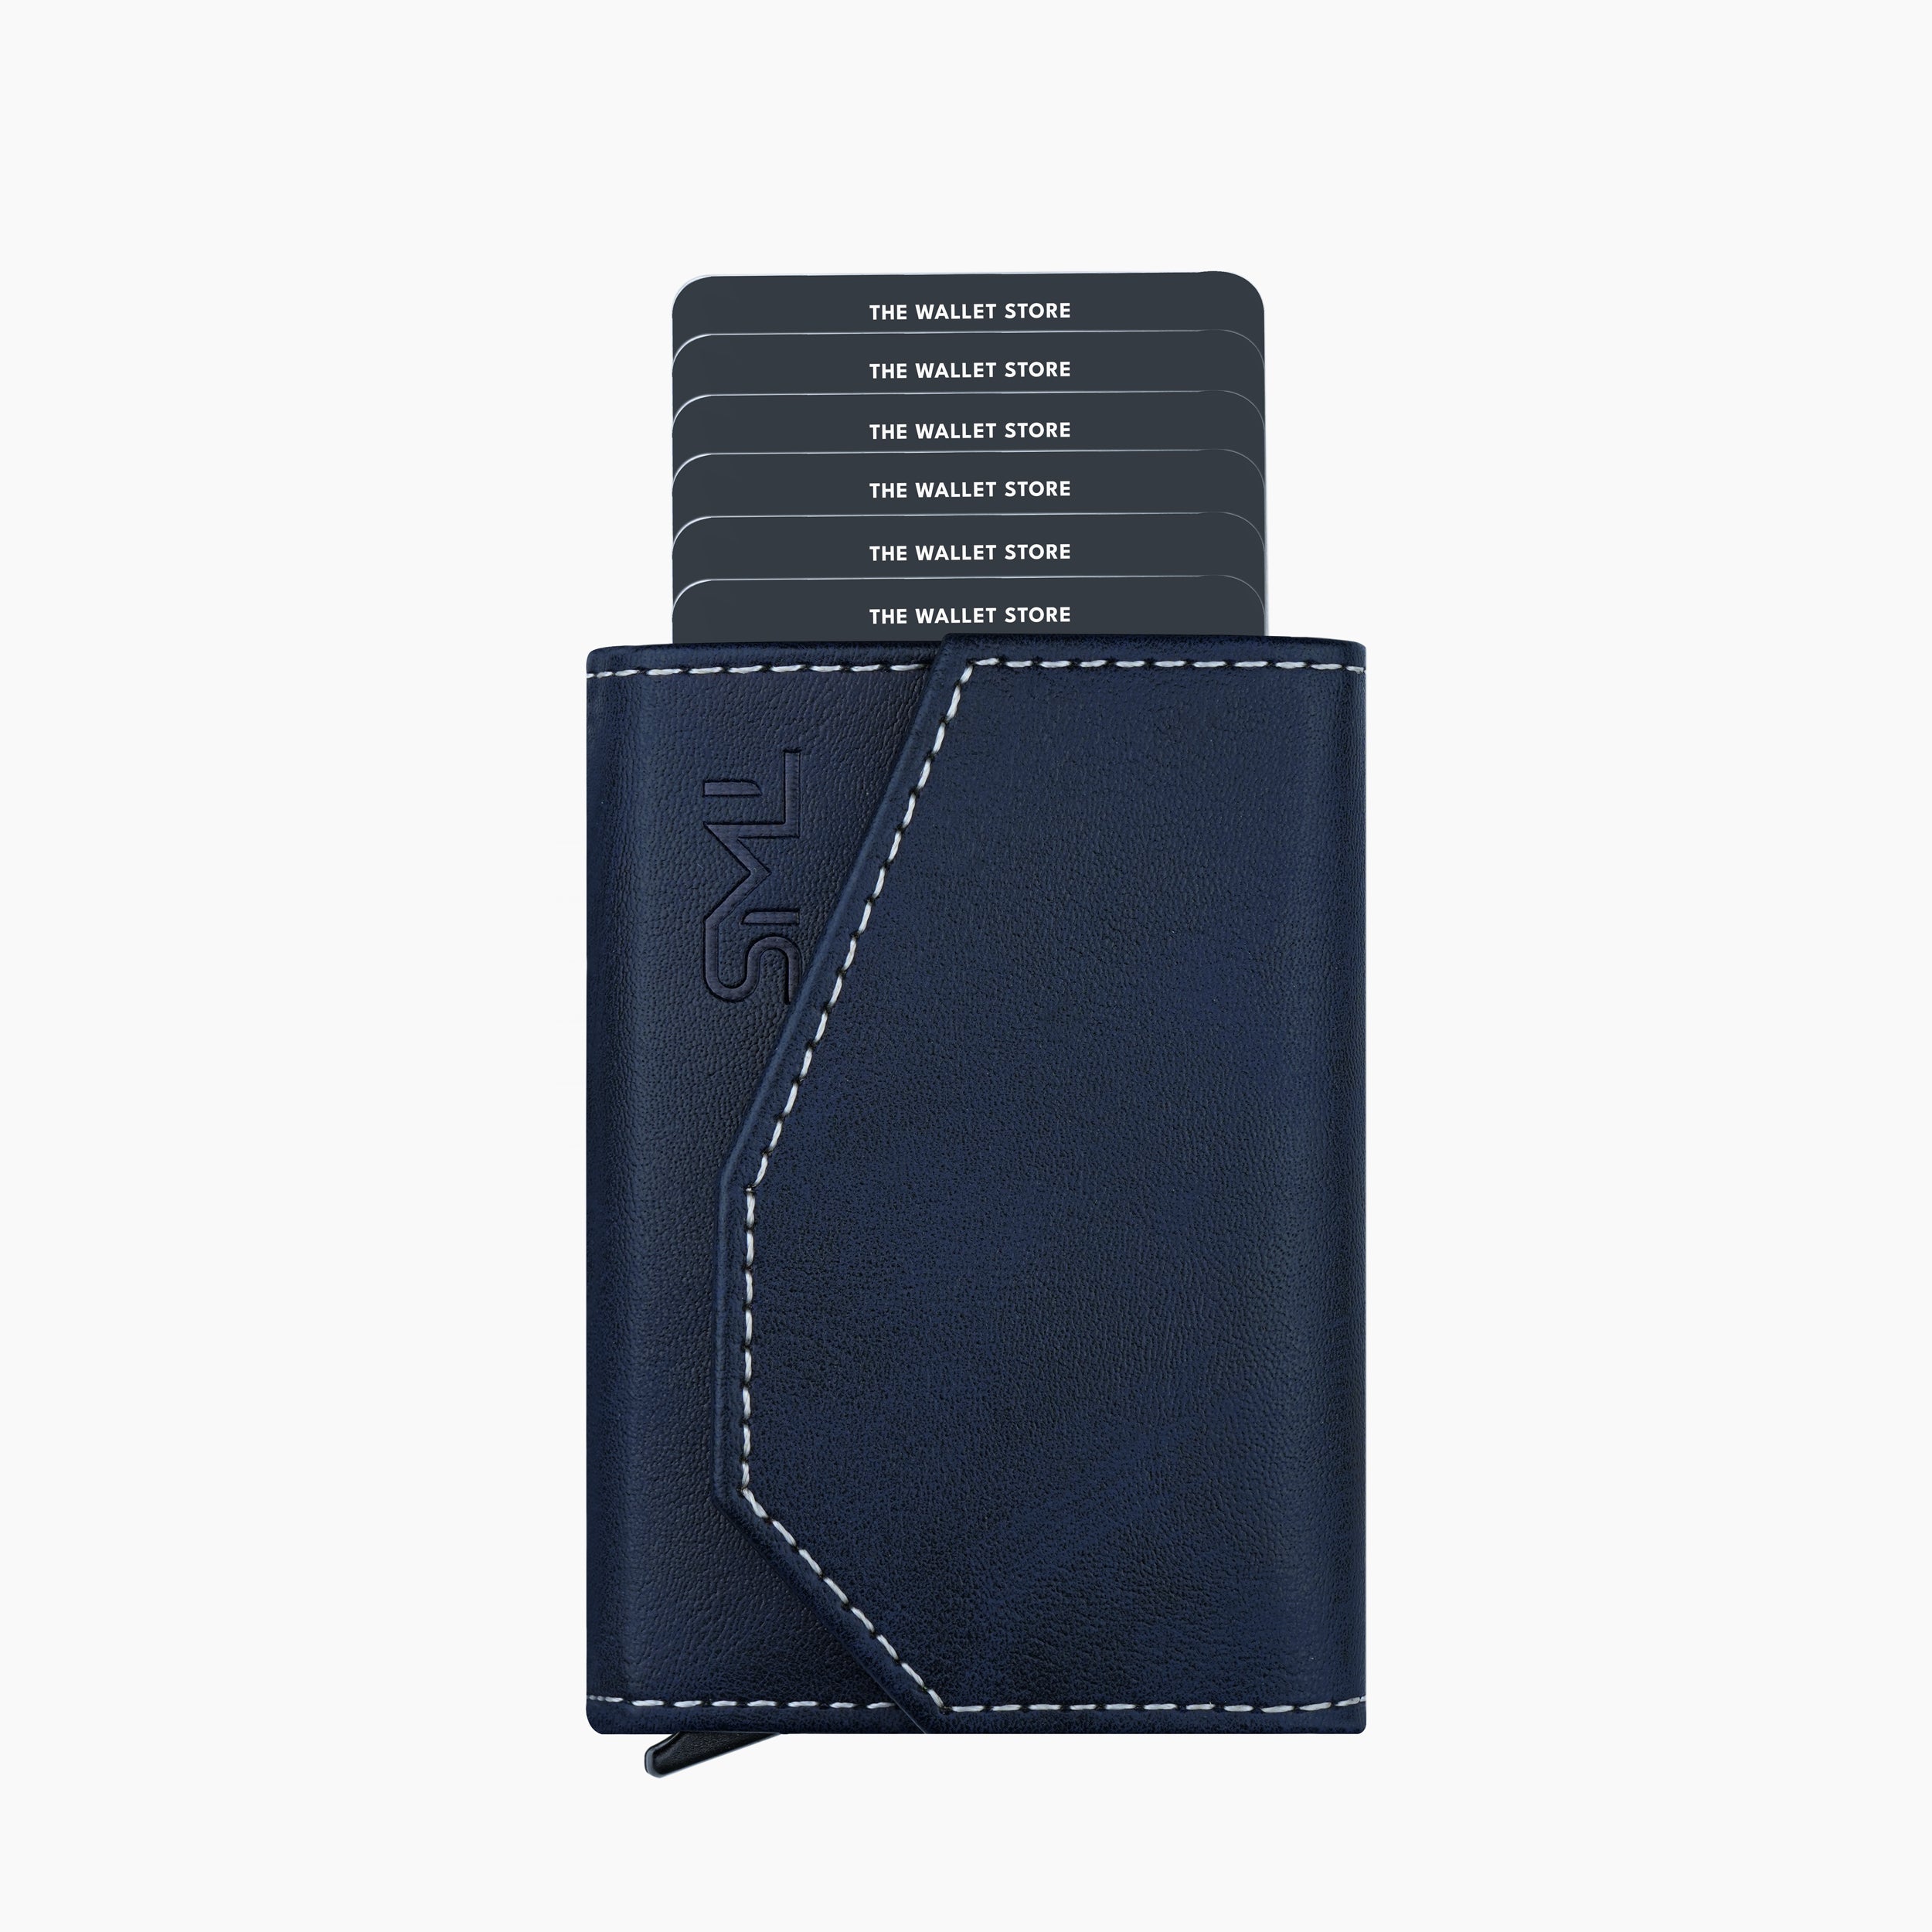 Vintage RFID Protected Wallet Card Holder - Blue